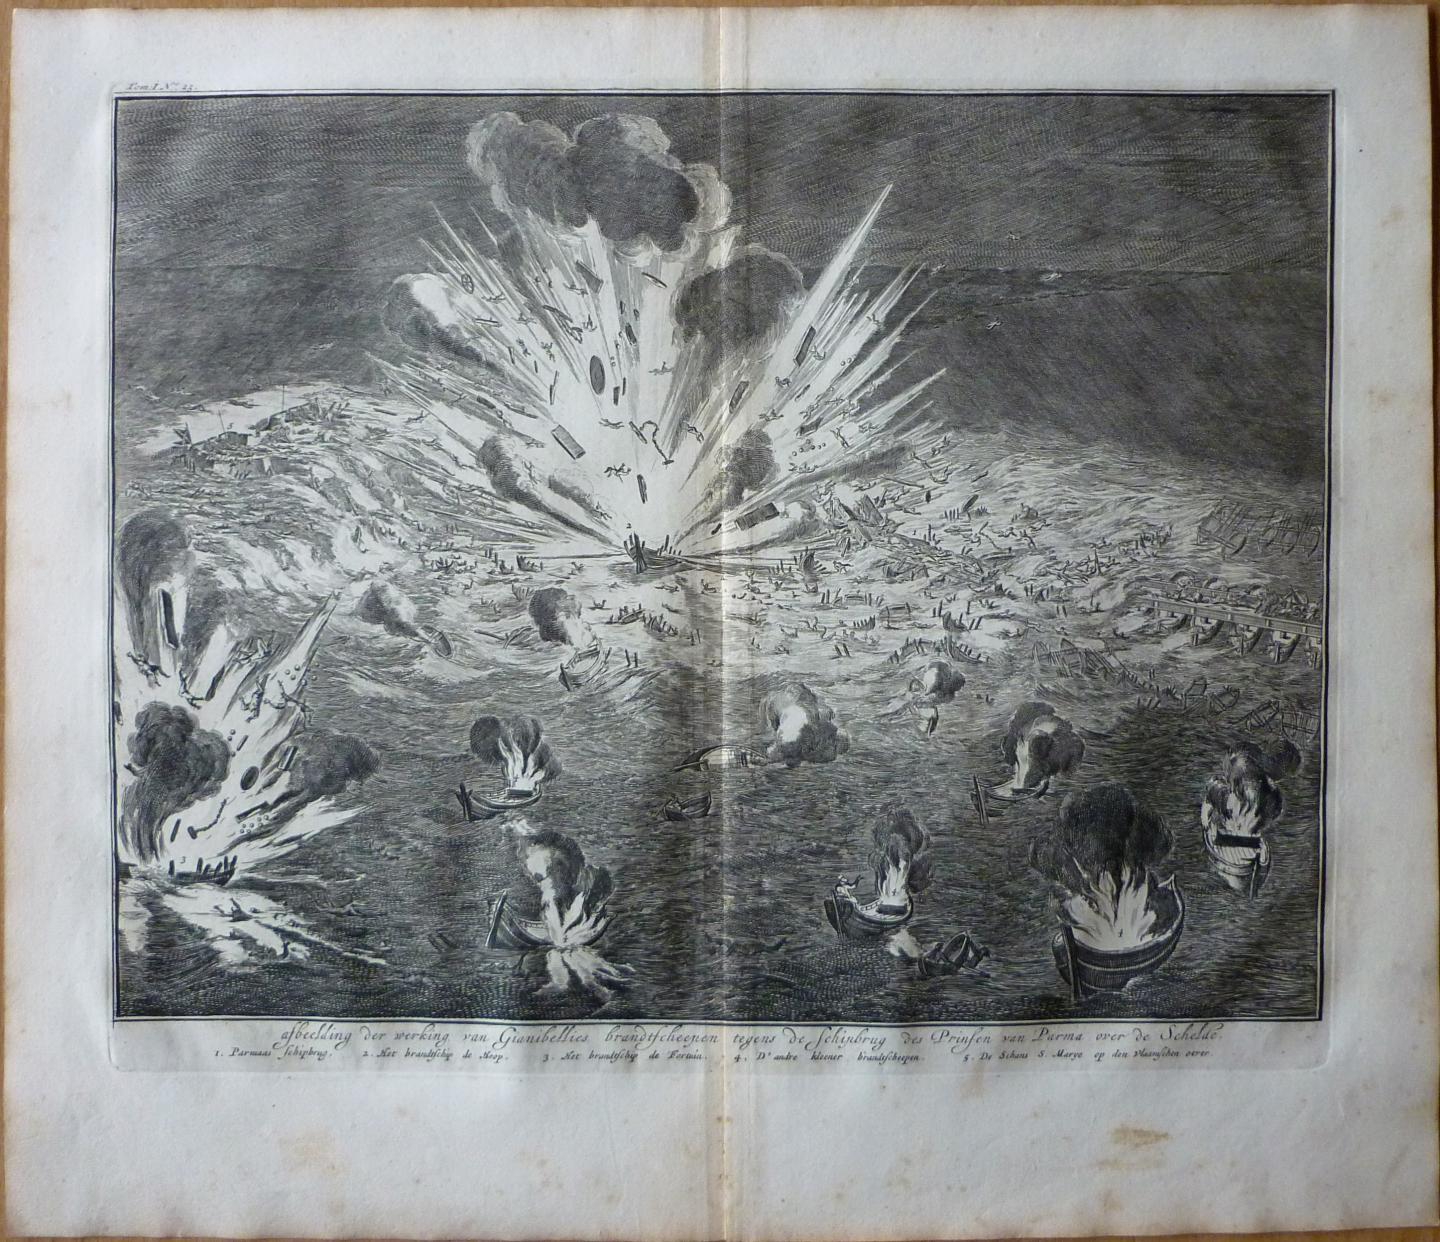 Luyken, Jan - Afbeelding der werking van Gianibellies brandtscheepen tegens de Schipbrug des prinsen van Parma over de Schelde